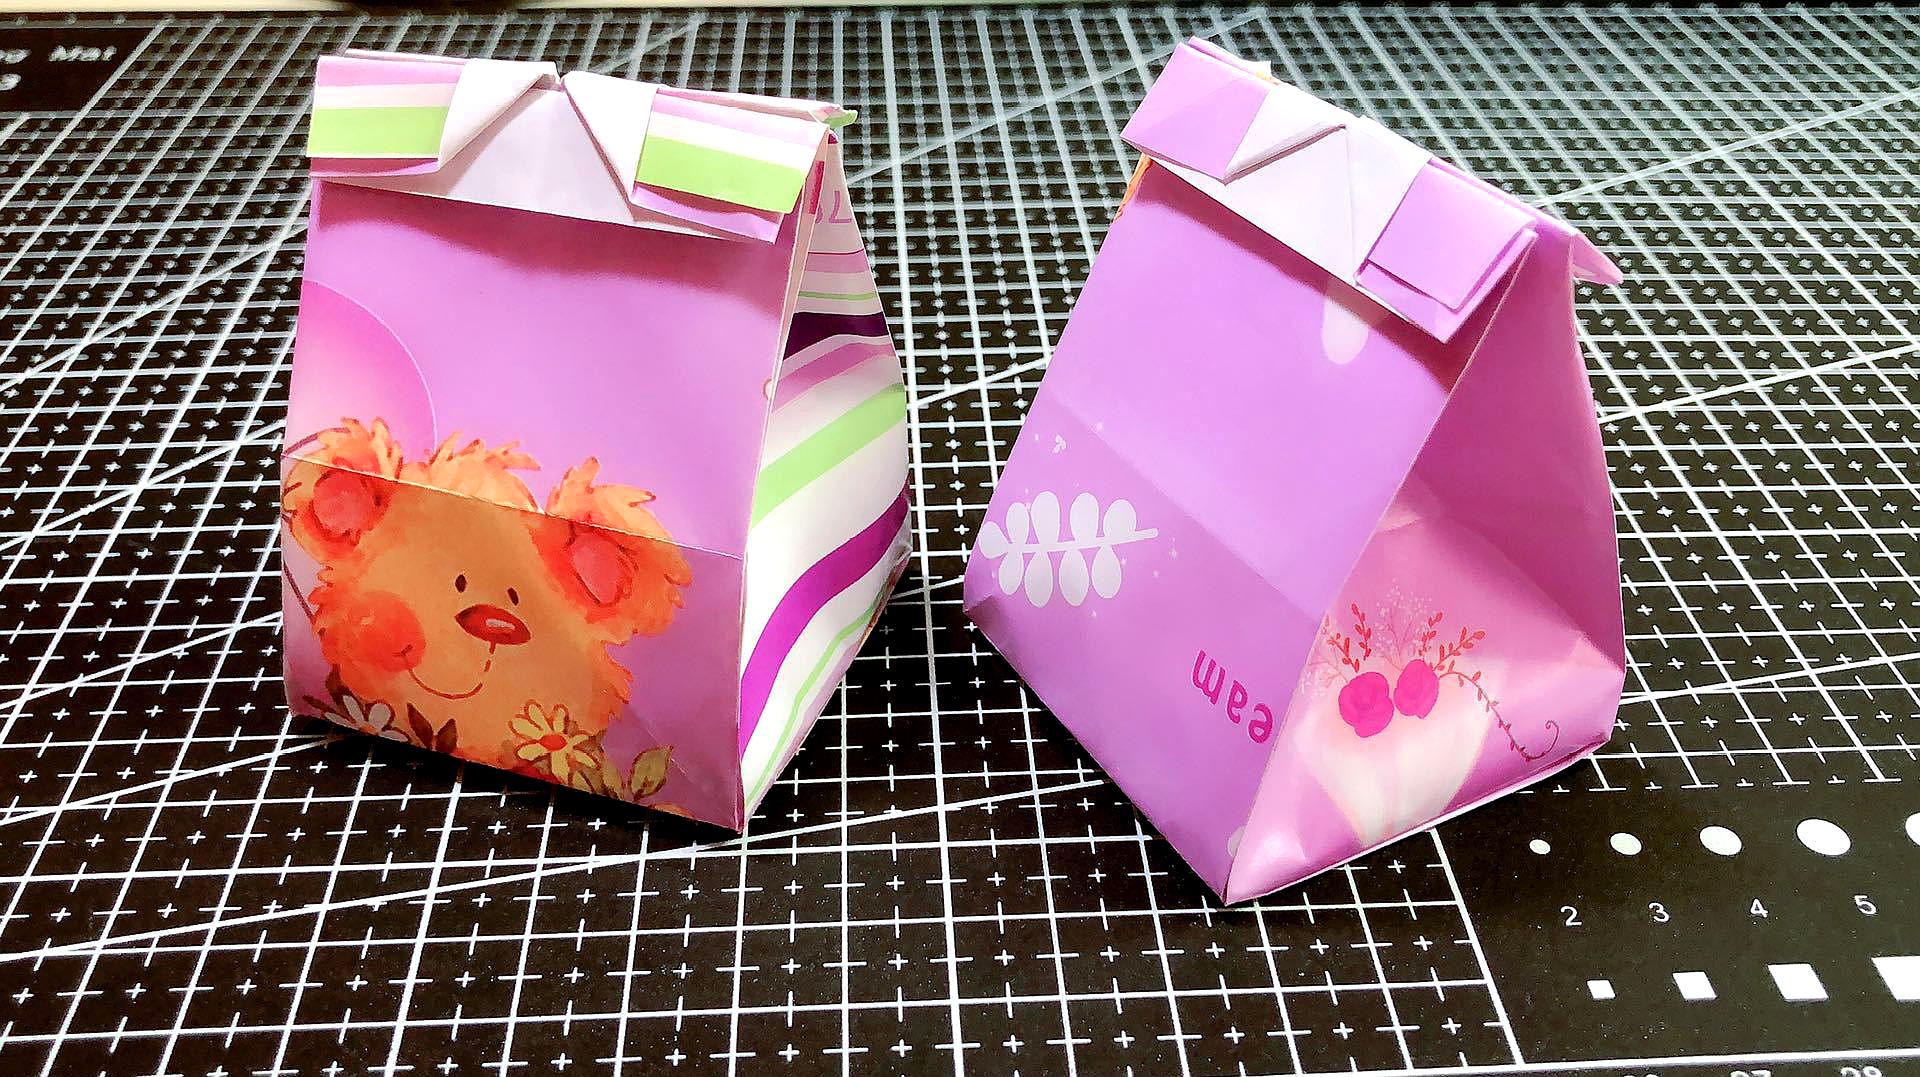 手工折纸:教你折漂亮礼品袋,不粘不剪一张纸搞定!